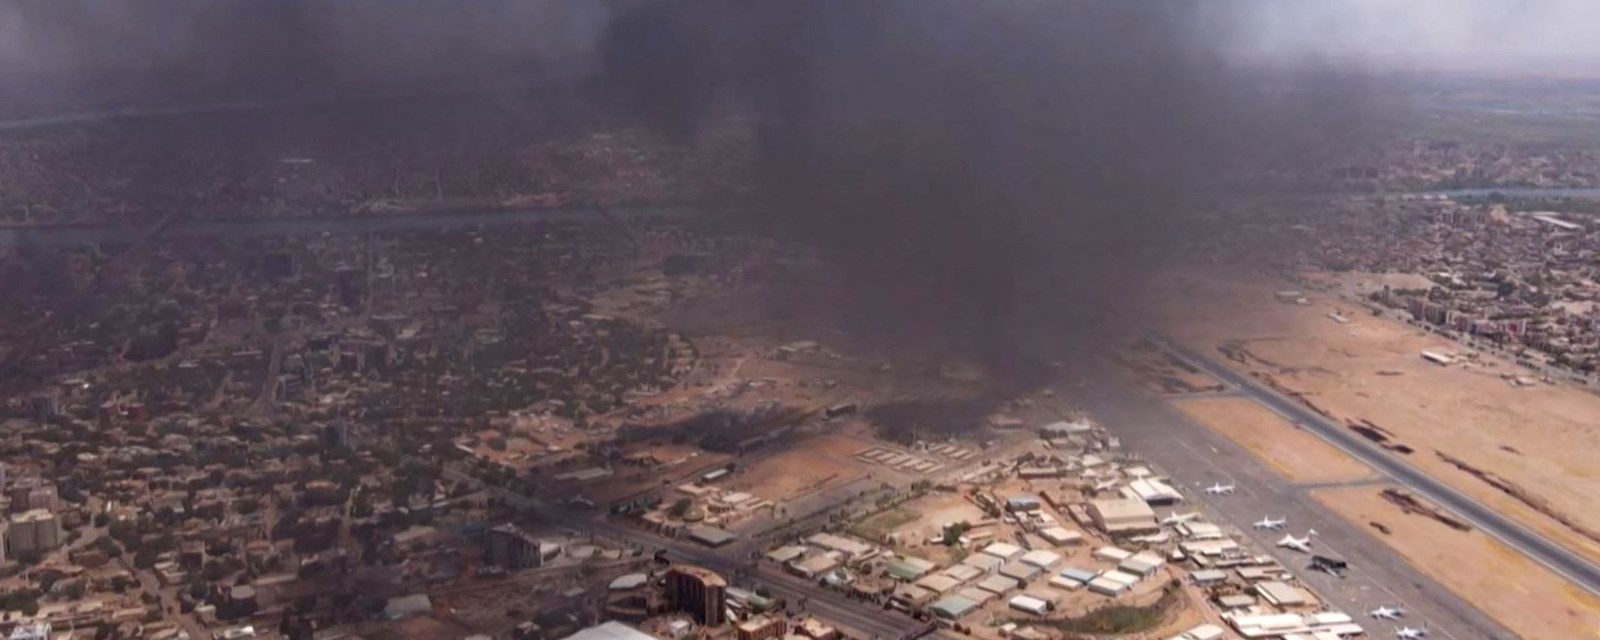 Røyk stiger opp fra flyplassen i Sudans hovedstad Khartoum